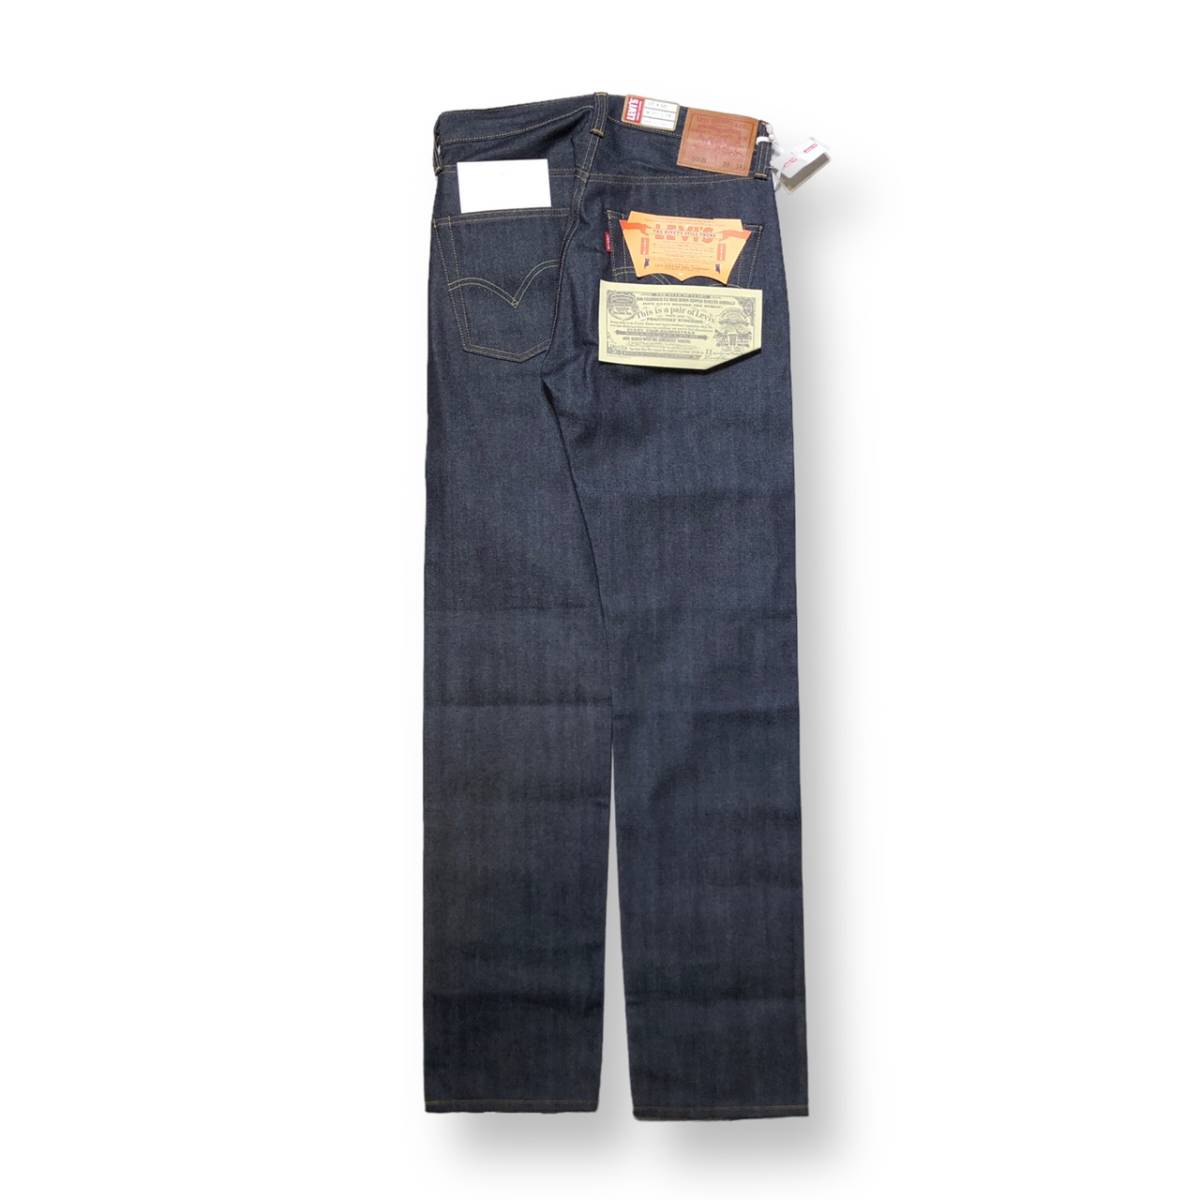 LEVI’S VINTAGE CLOTHING 501XX denim jeans 1947年モデル 47501-0224 デニム ジーンズ W30 リーバイス ビンテージクロージング_画像2